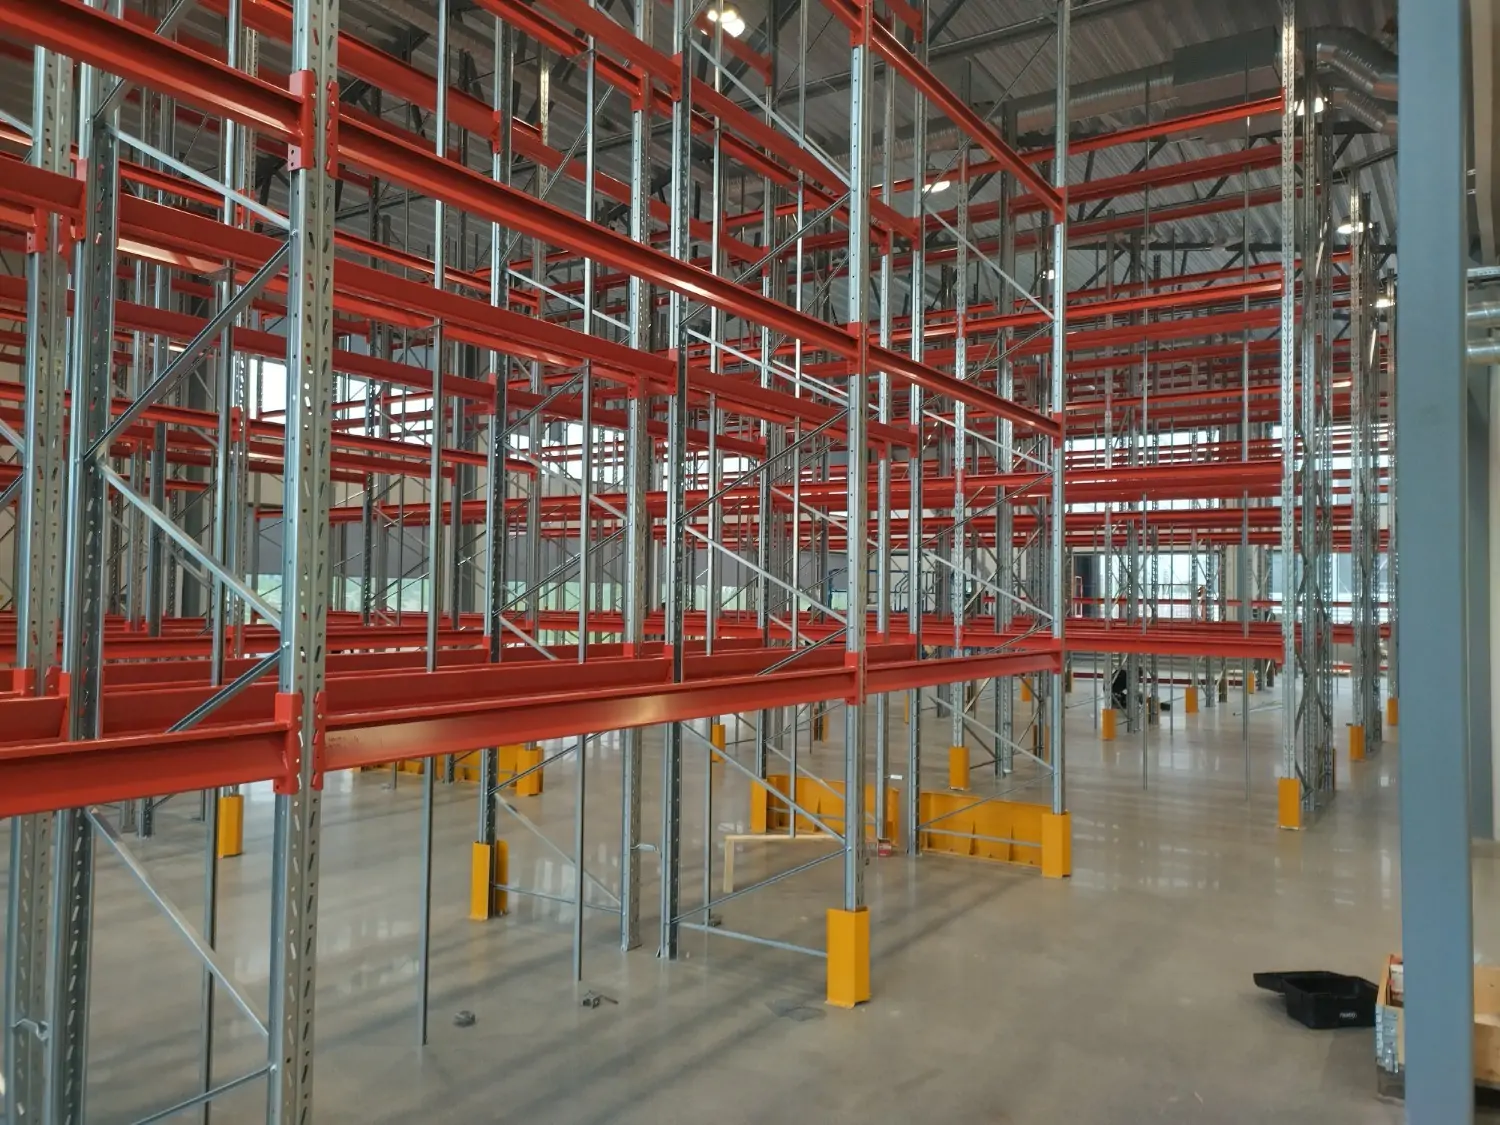 Ett system av röda och metallfärgade pallställ i en lagerlokal.